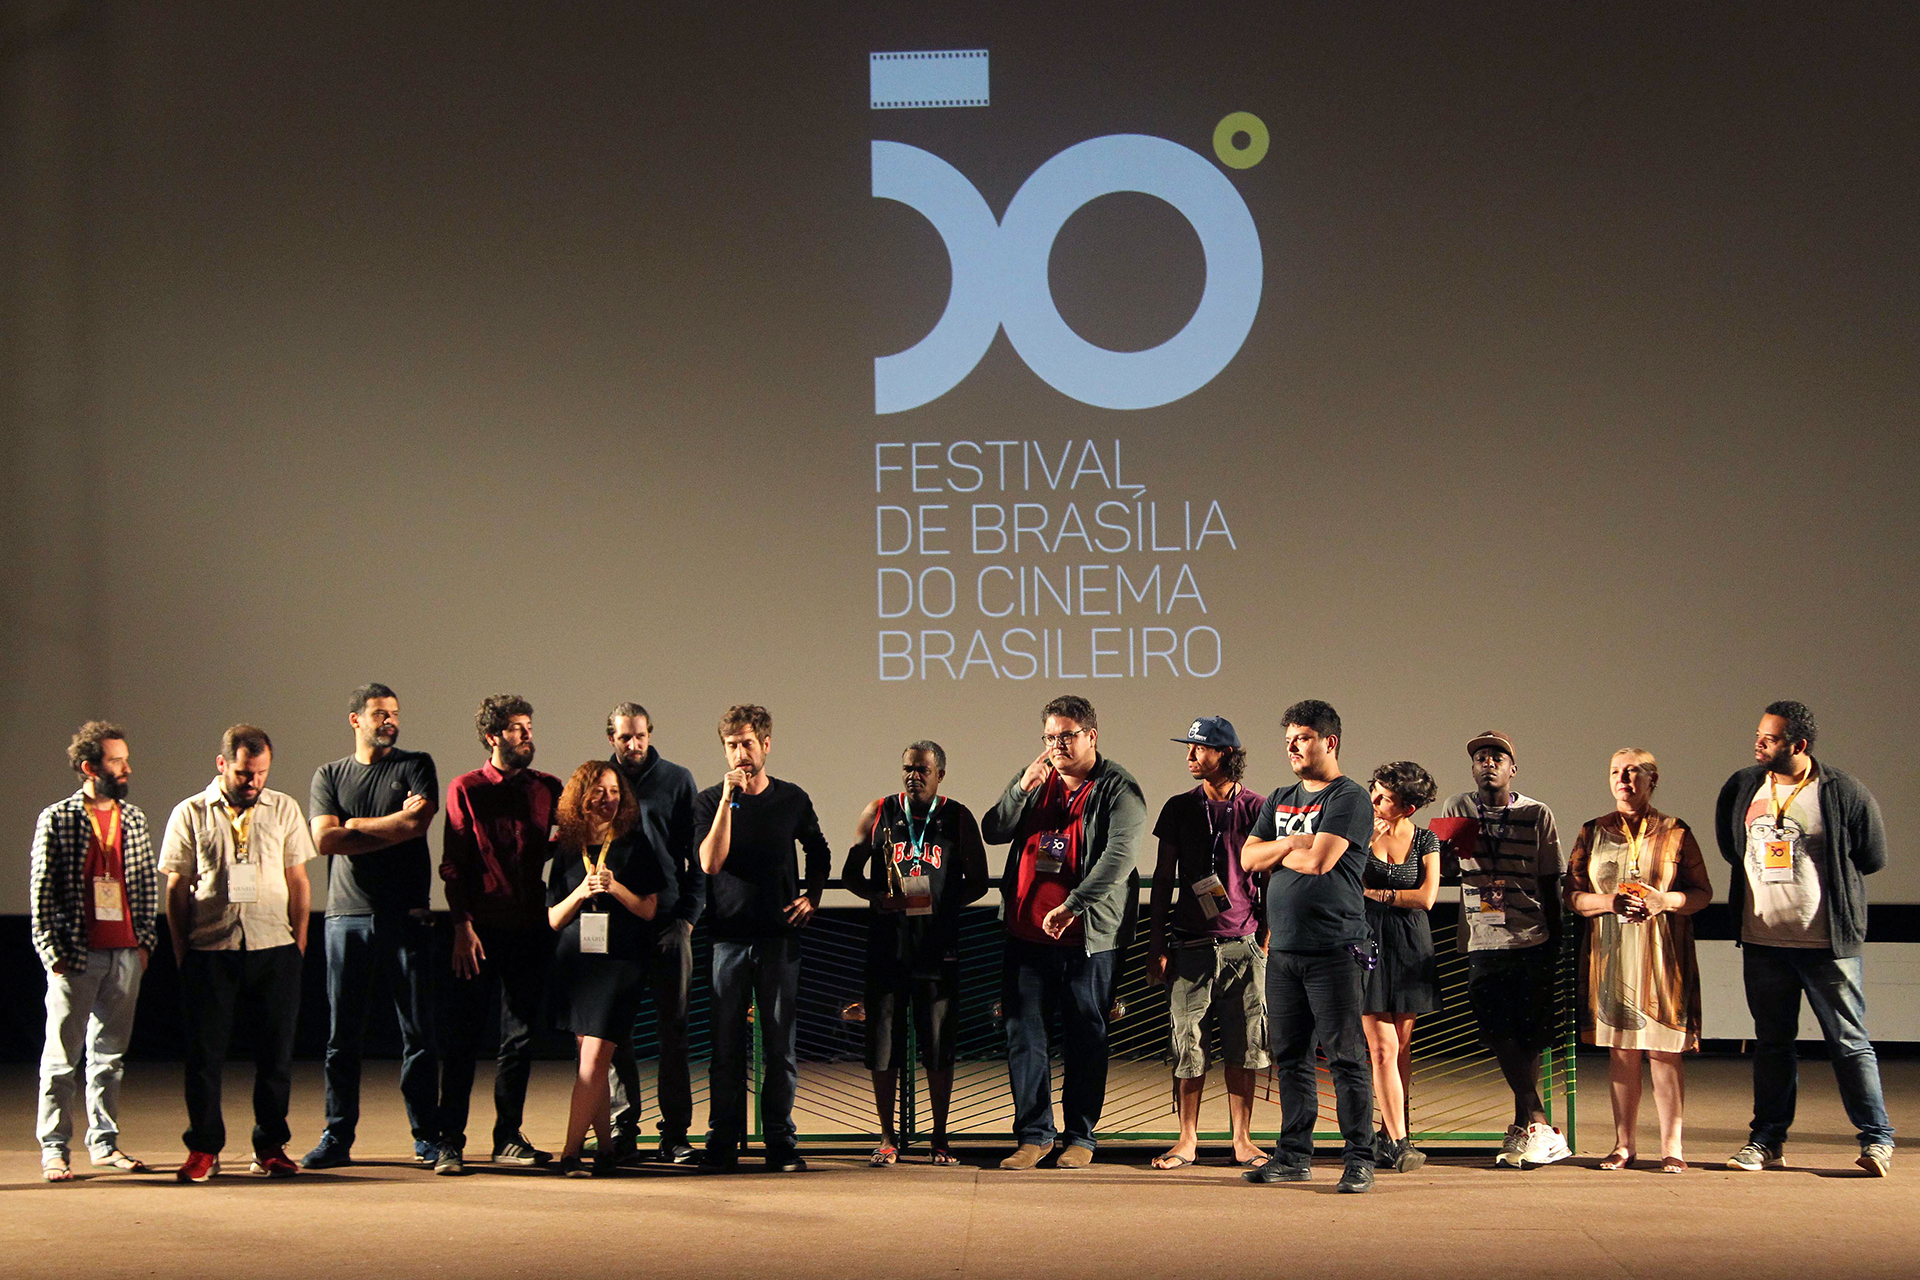 O longa-metragem Arábia, de Affonso Uchoa e João Dumans, foi o grande vencedor do 50º Festival de Brasília do Cinema Brasileiro